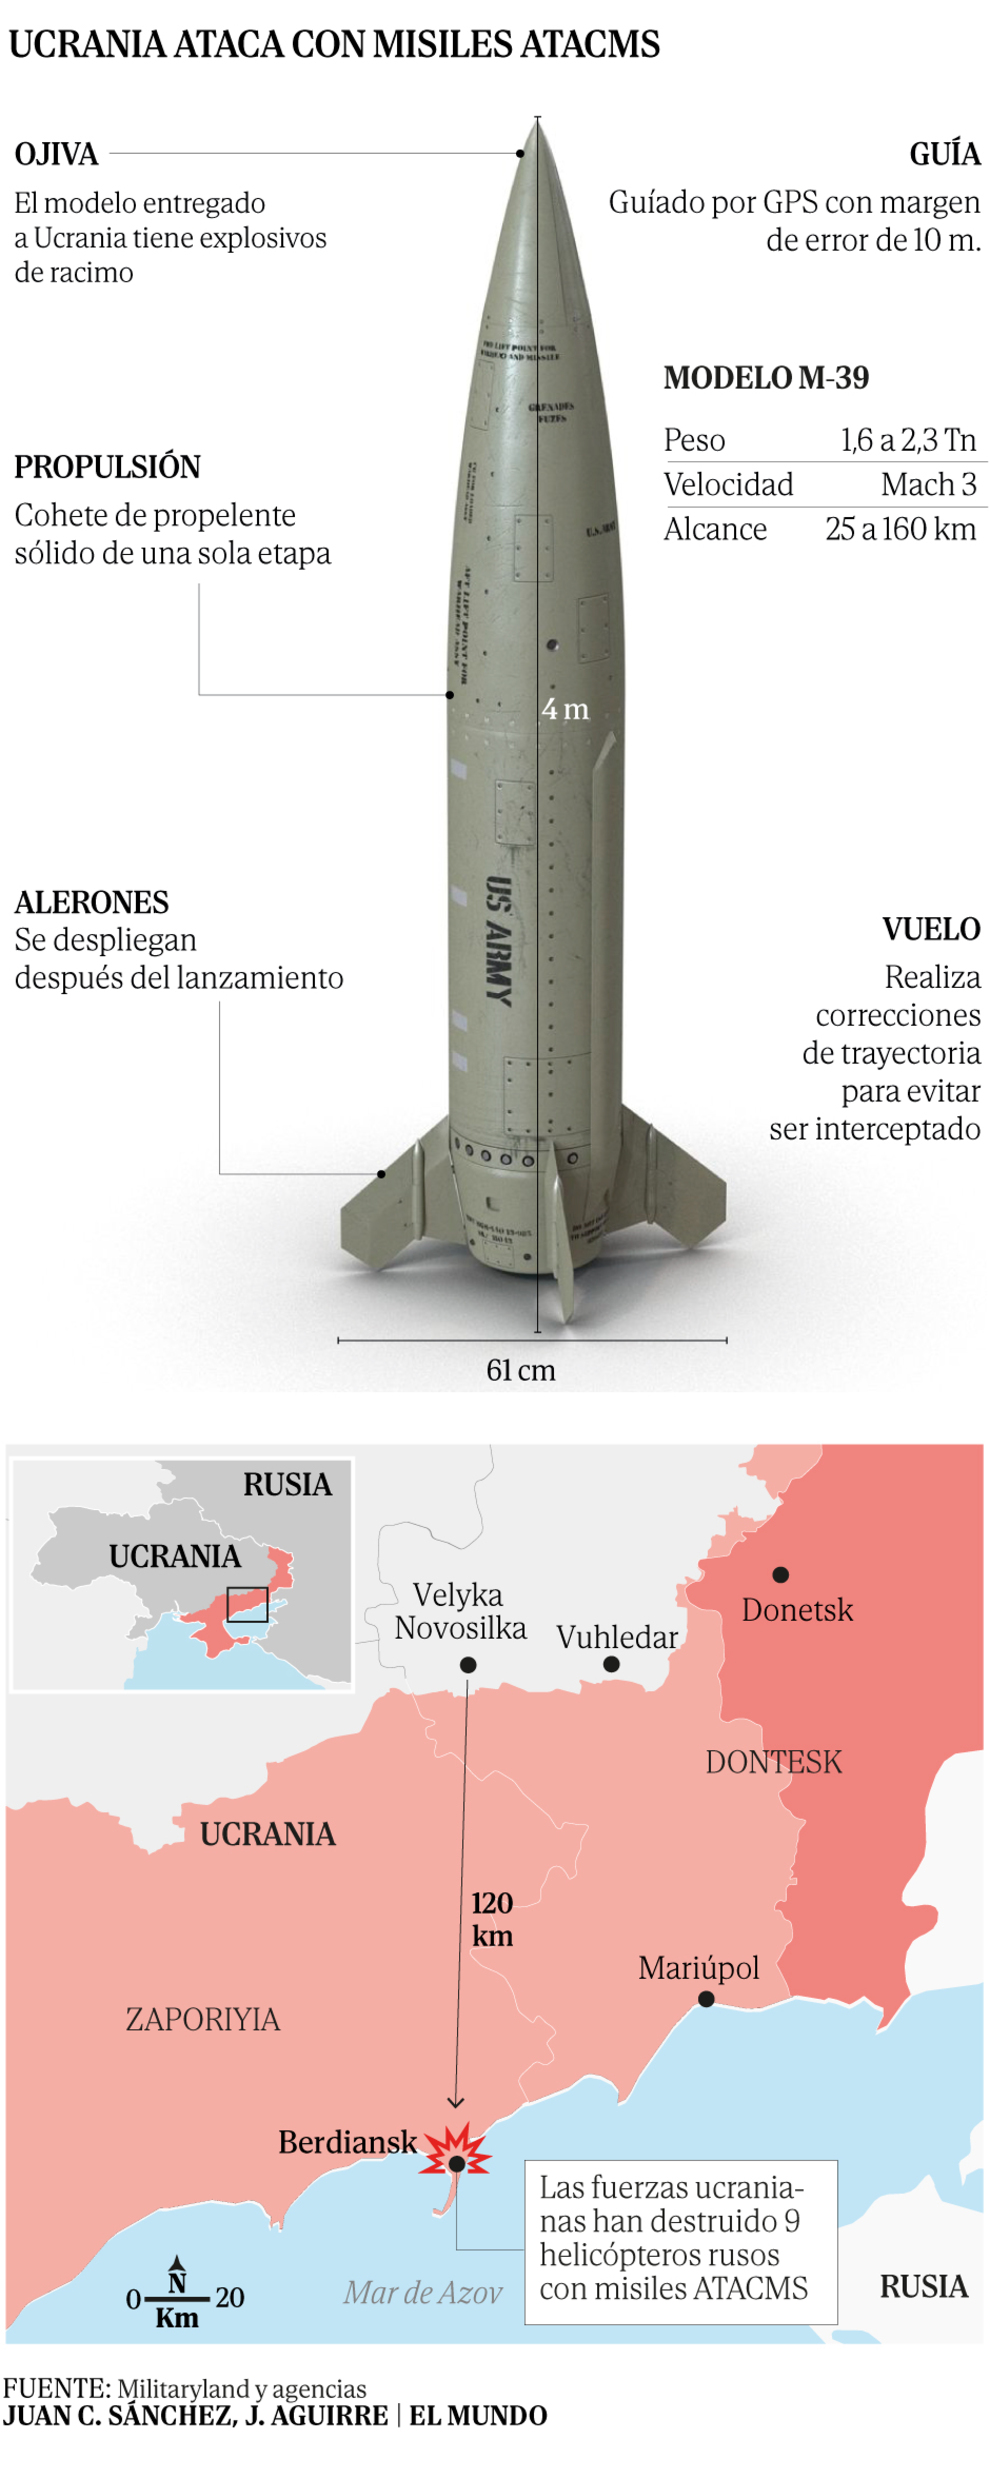 La llegada de nuevos misiles estadounidenses deja a Rusia sin un lugar seguro en Ucrania